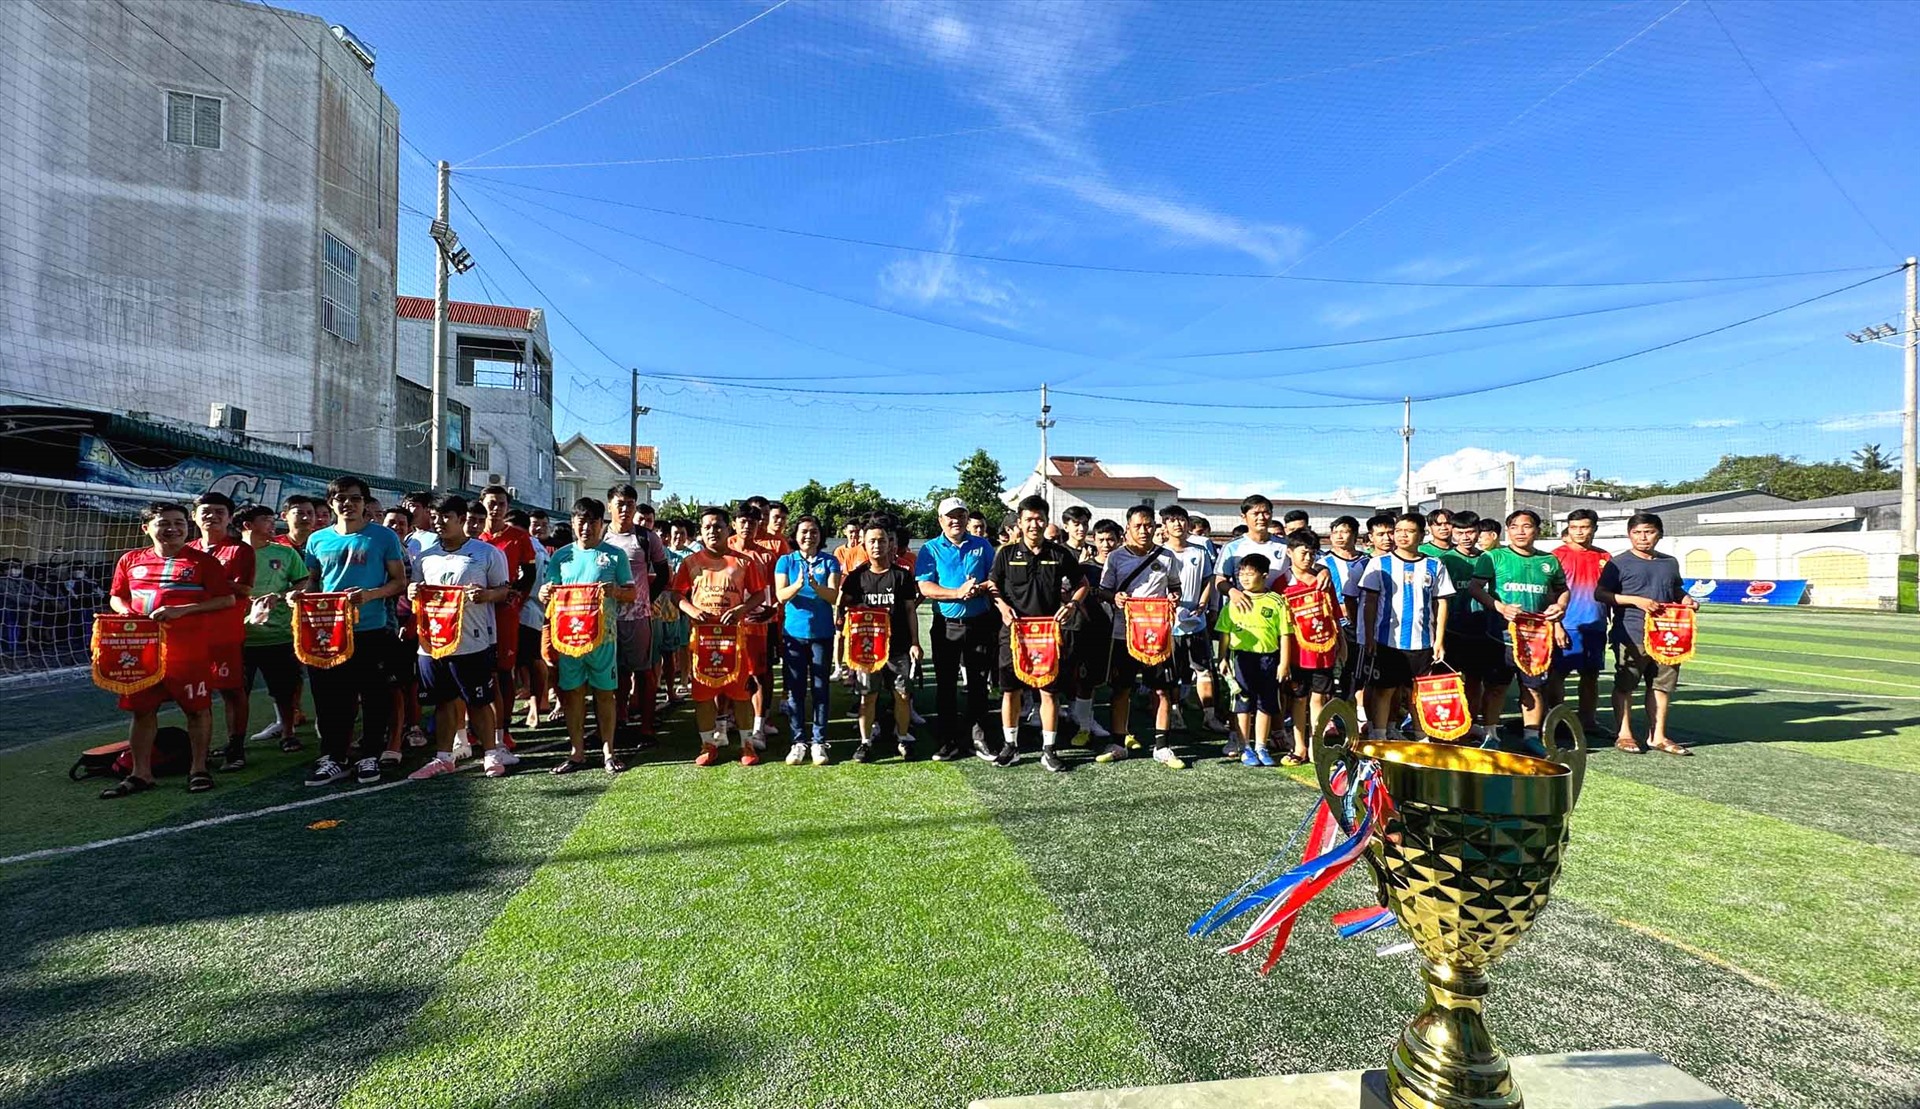 Có 14 đội bóng tham gia tranh tài Giải bóng đá chào mừng 94 năm Ngày thành lập Công đoàn Việt Nam. Ảnh: Thanh Nhàn